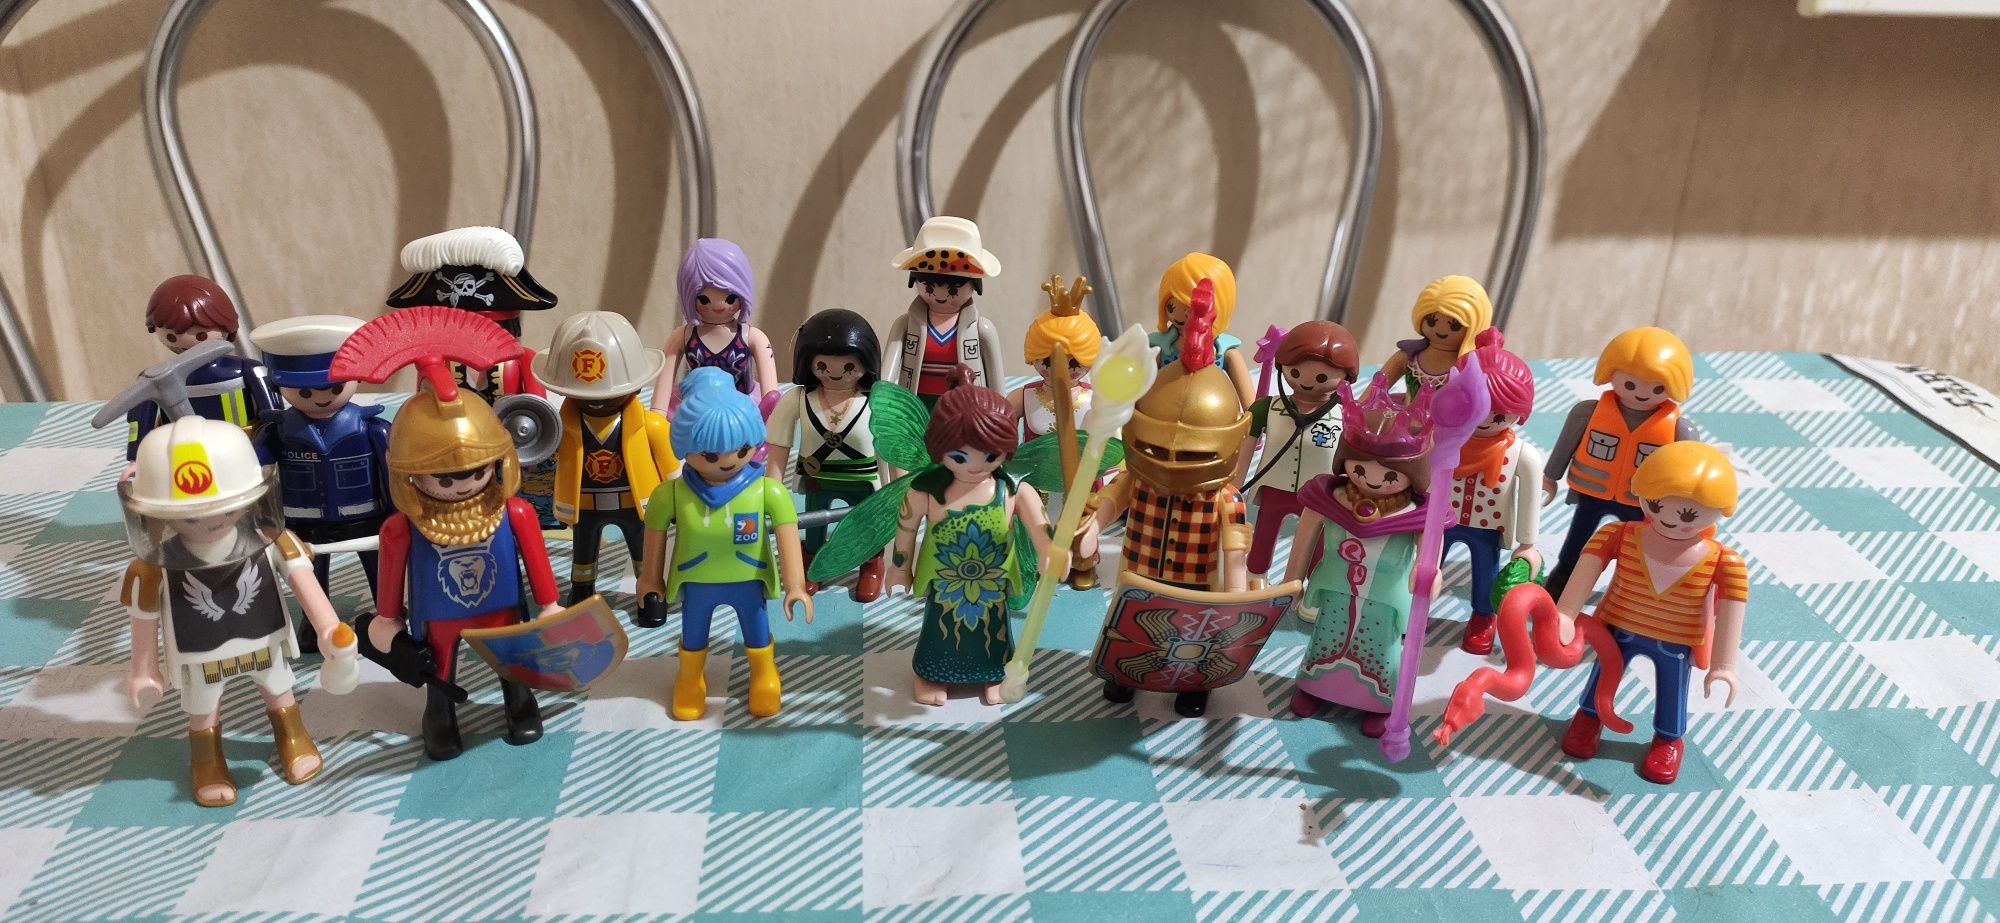 Playmobil  20 фігурок різних професій, ціна за всі.

Дж